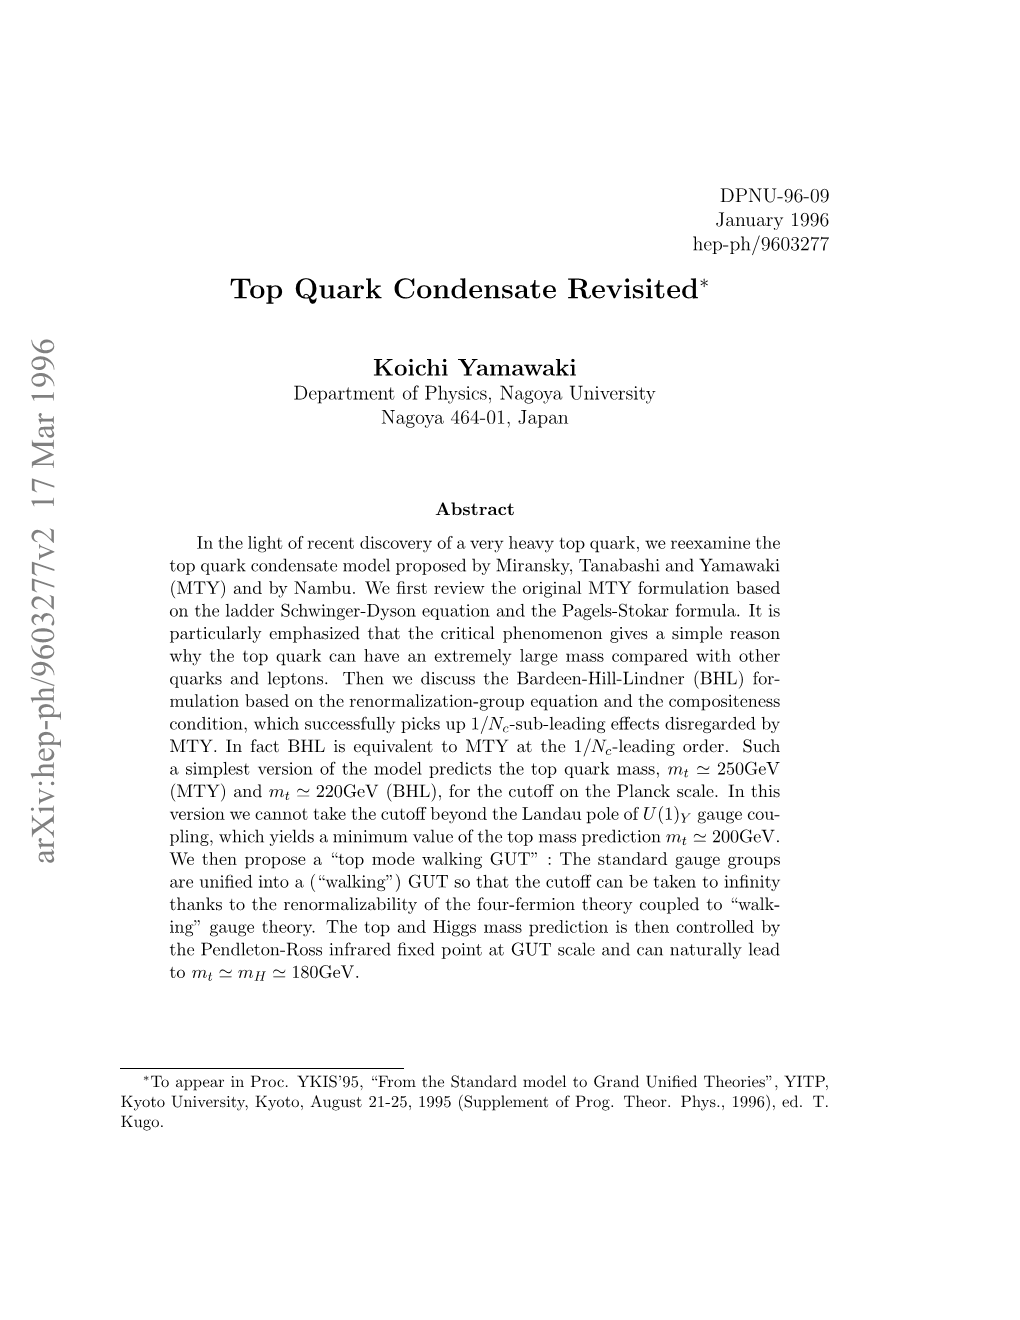 Top Quark Condensate Revisited